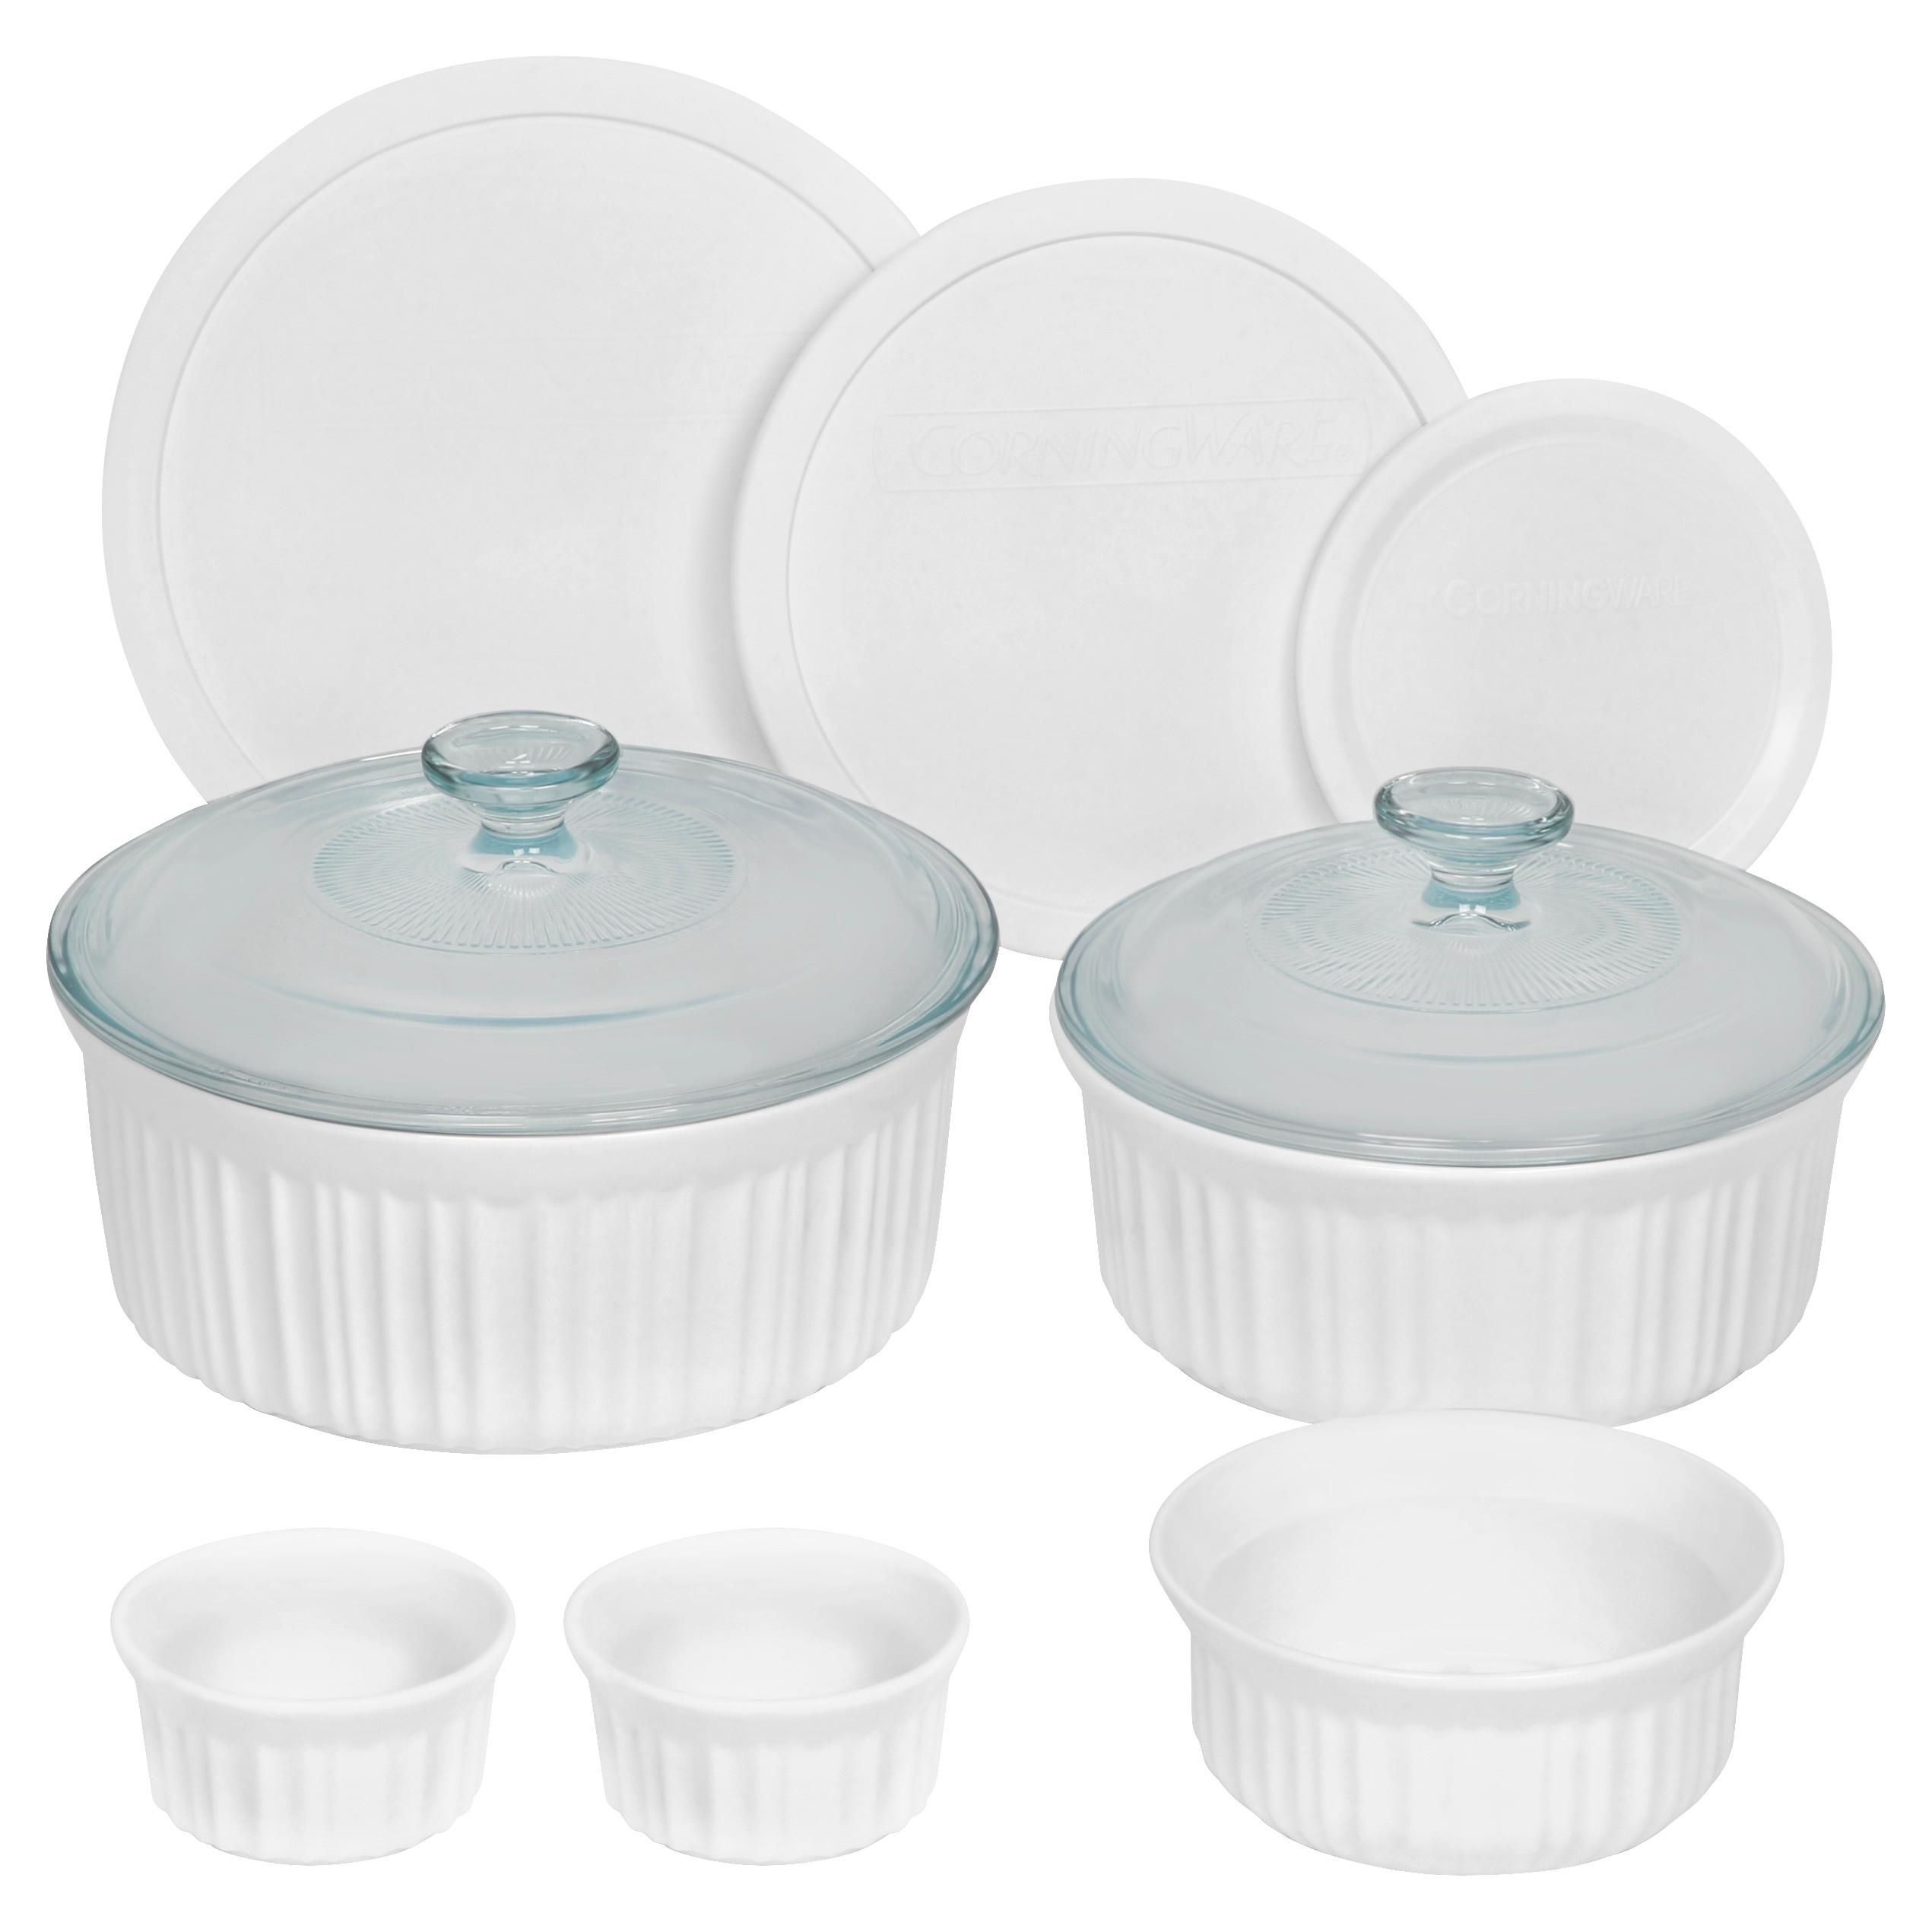 Fingerhut - Pyrex 5-Pc. Glass Bakeware Set